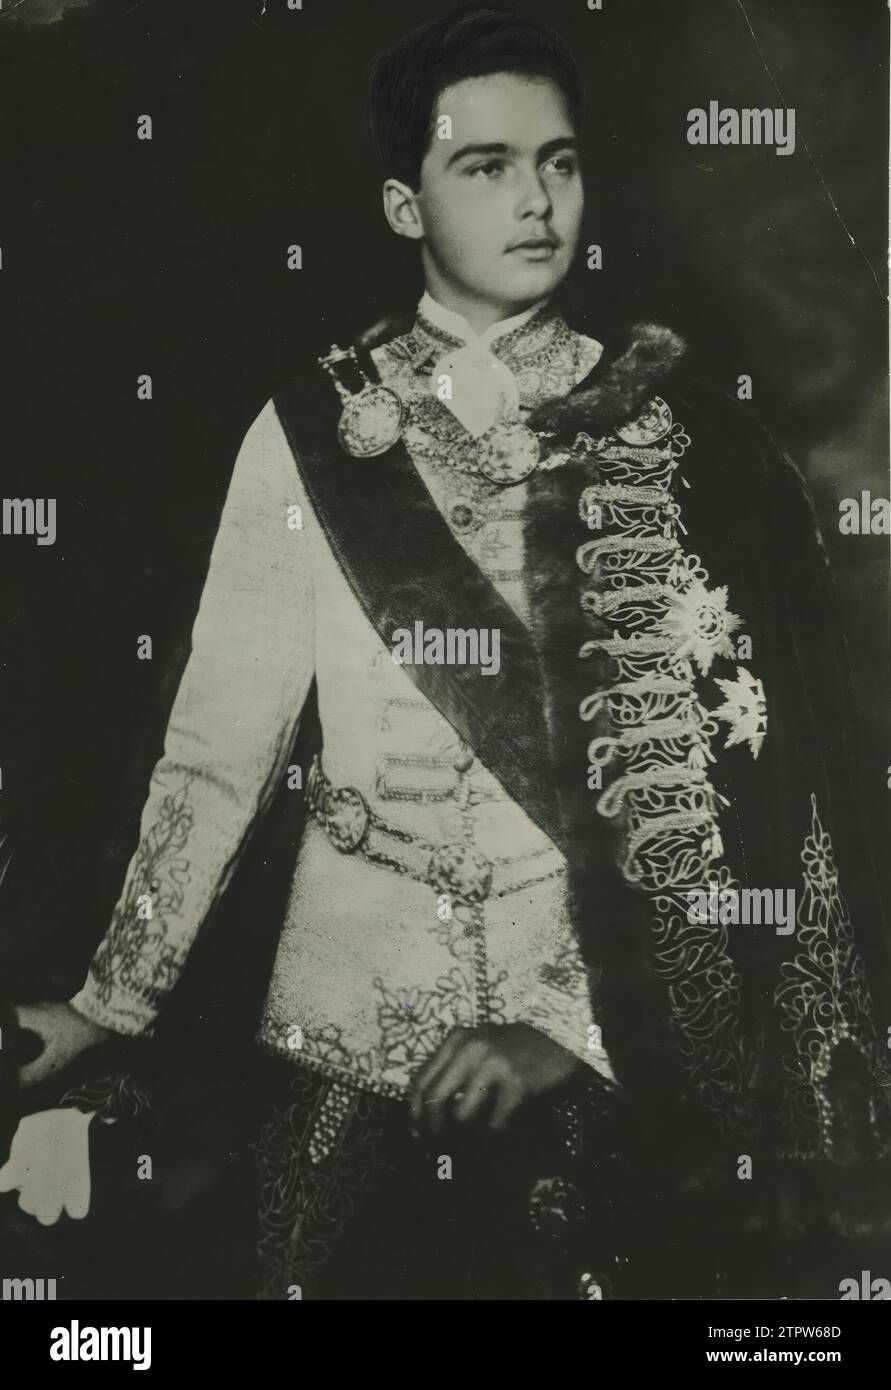 12/31/1930. L'Arciduca Ottone d'Asburgo in uniforme degli Ussari Magiari. Crediti: Album / Archivo ABC Foto Stock